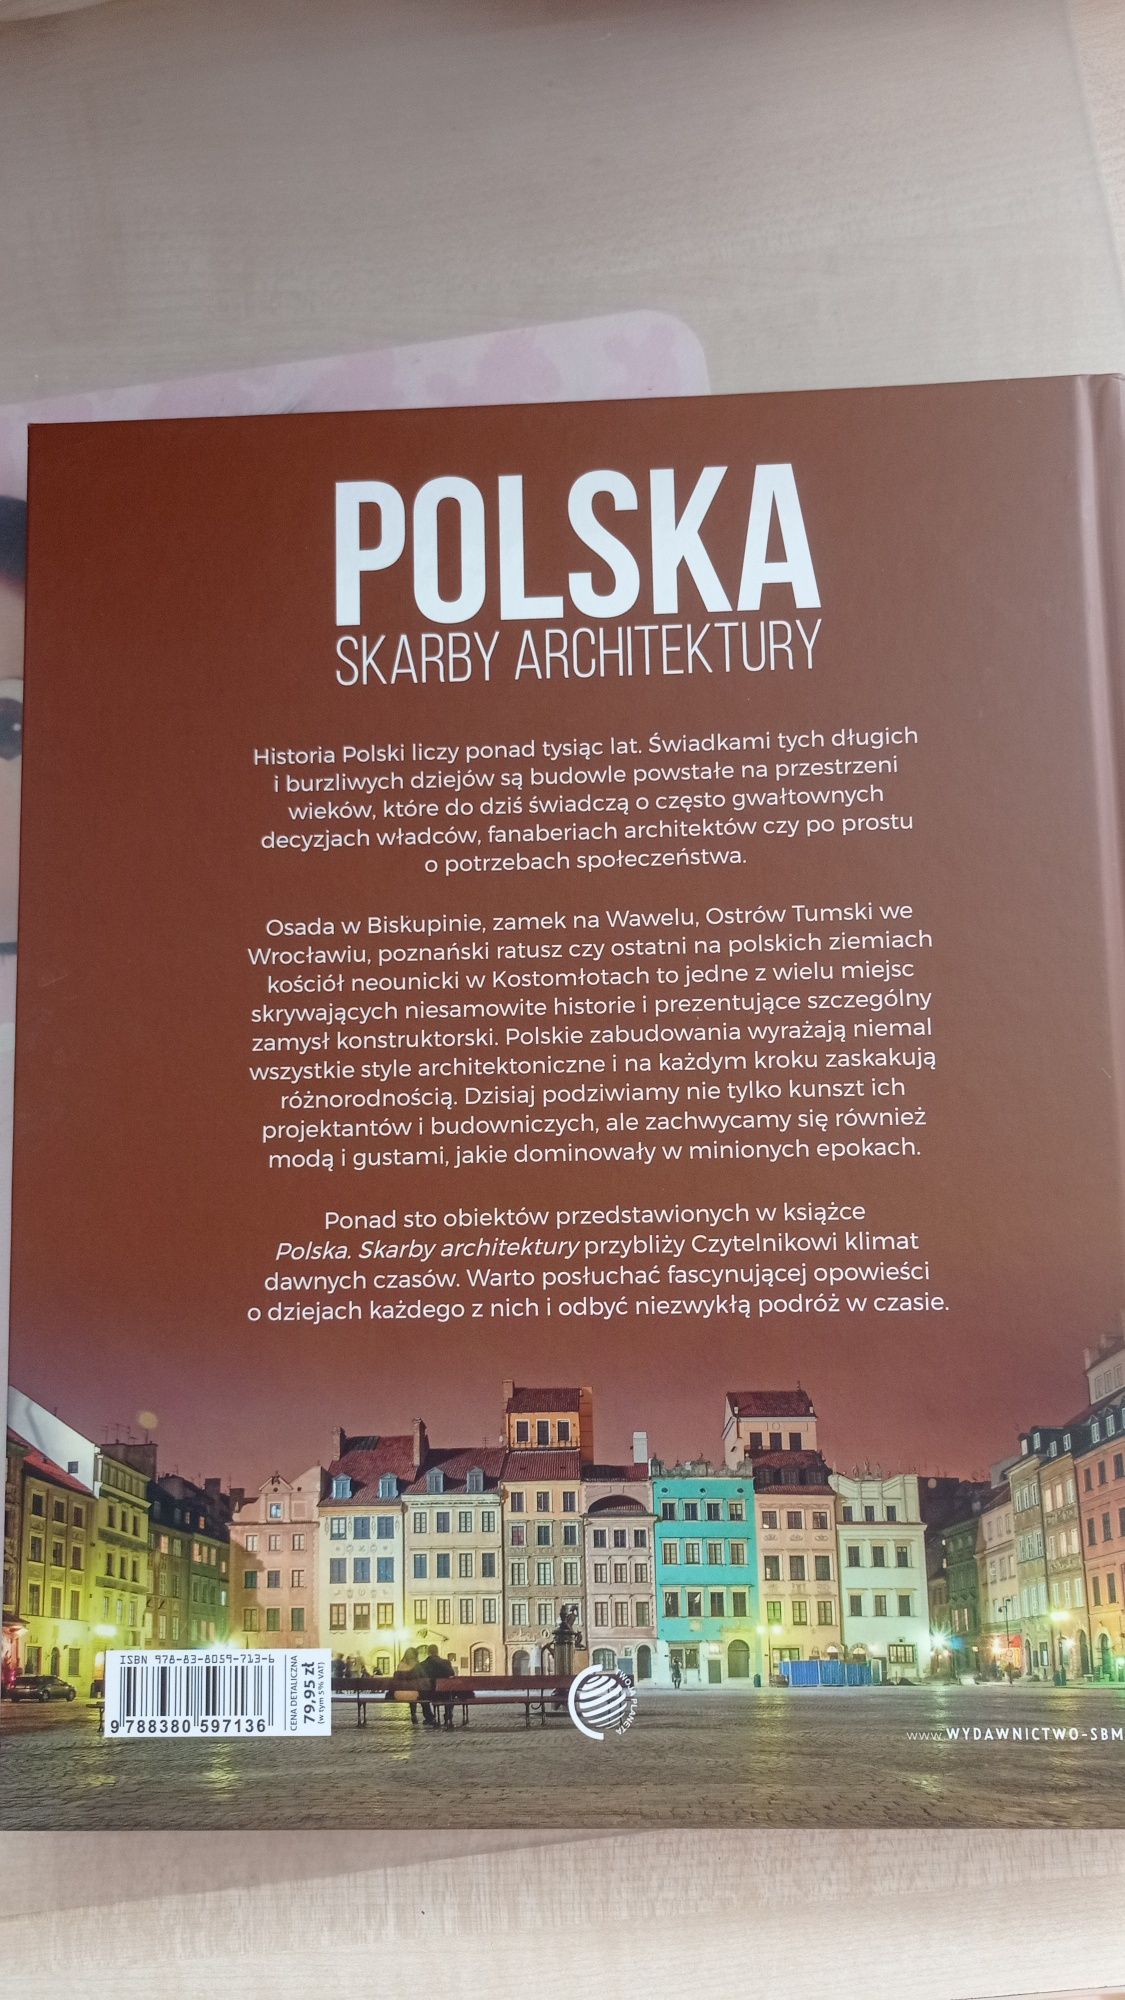 Książka "Polska skarby architektury